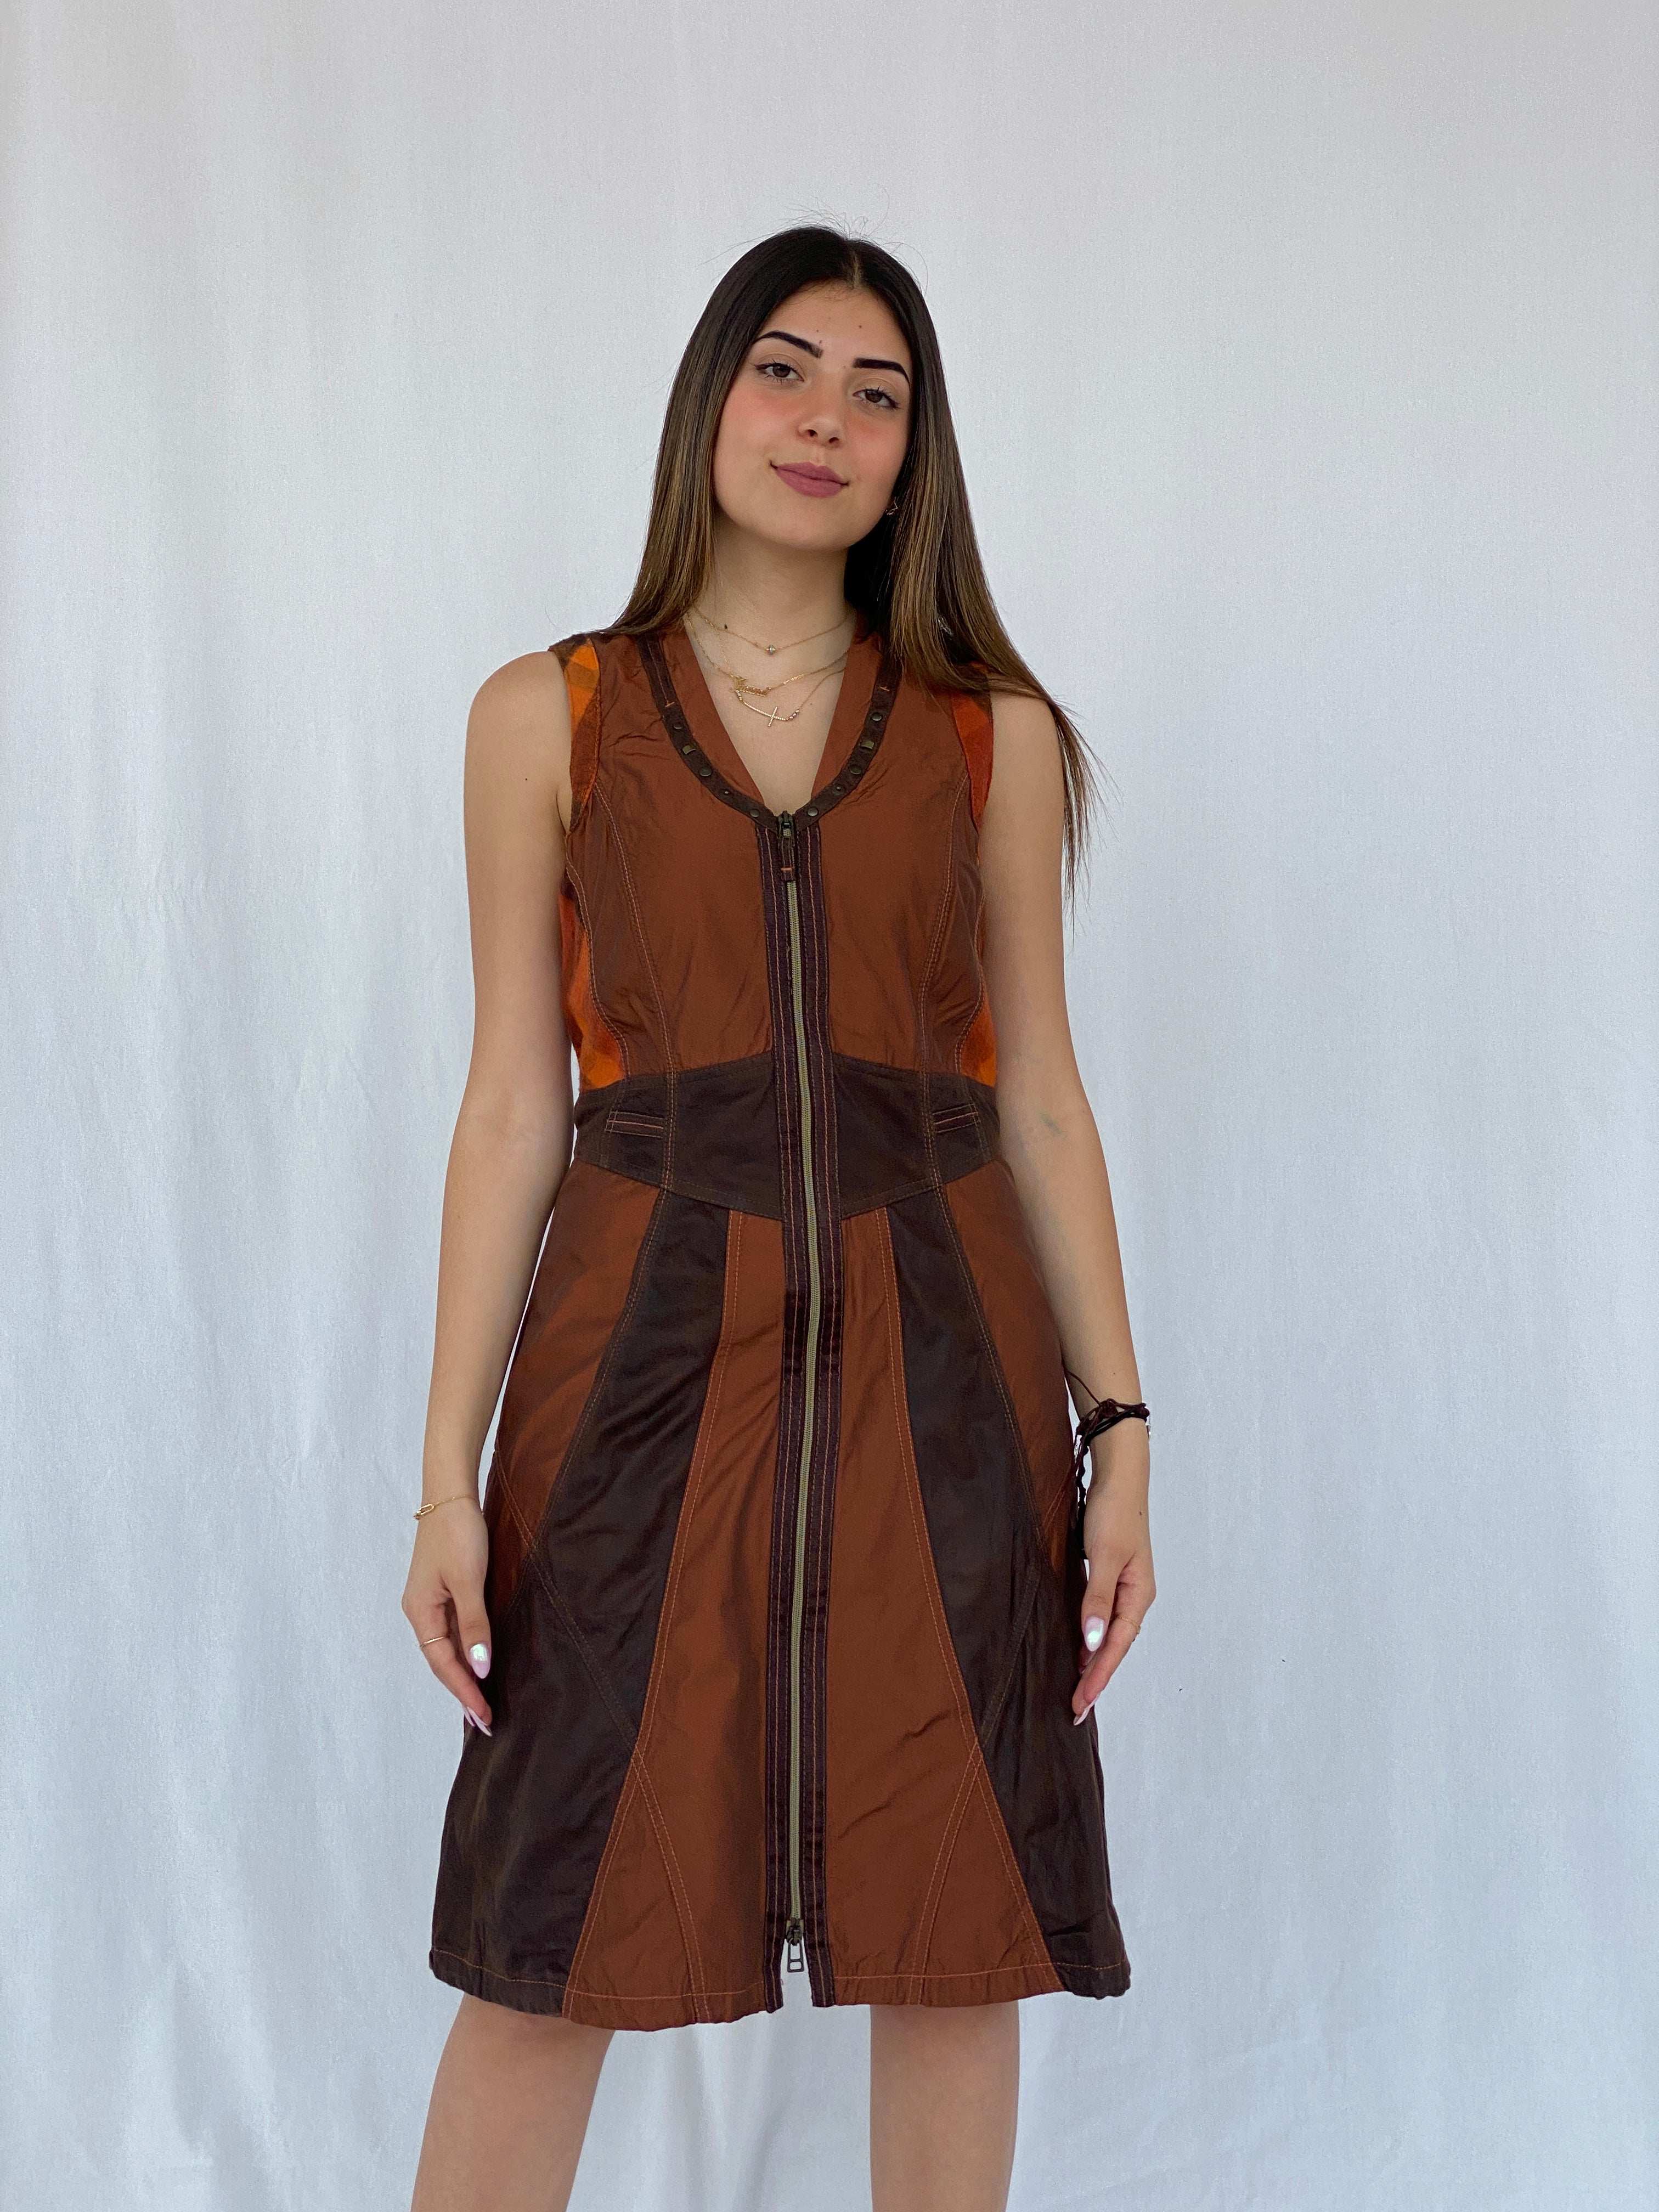 BIBA Patchwork Brown Midi Dress Size M - Balagan Vintage Midi Dress 90s, dress, Juana, midi dress, NEW IN